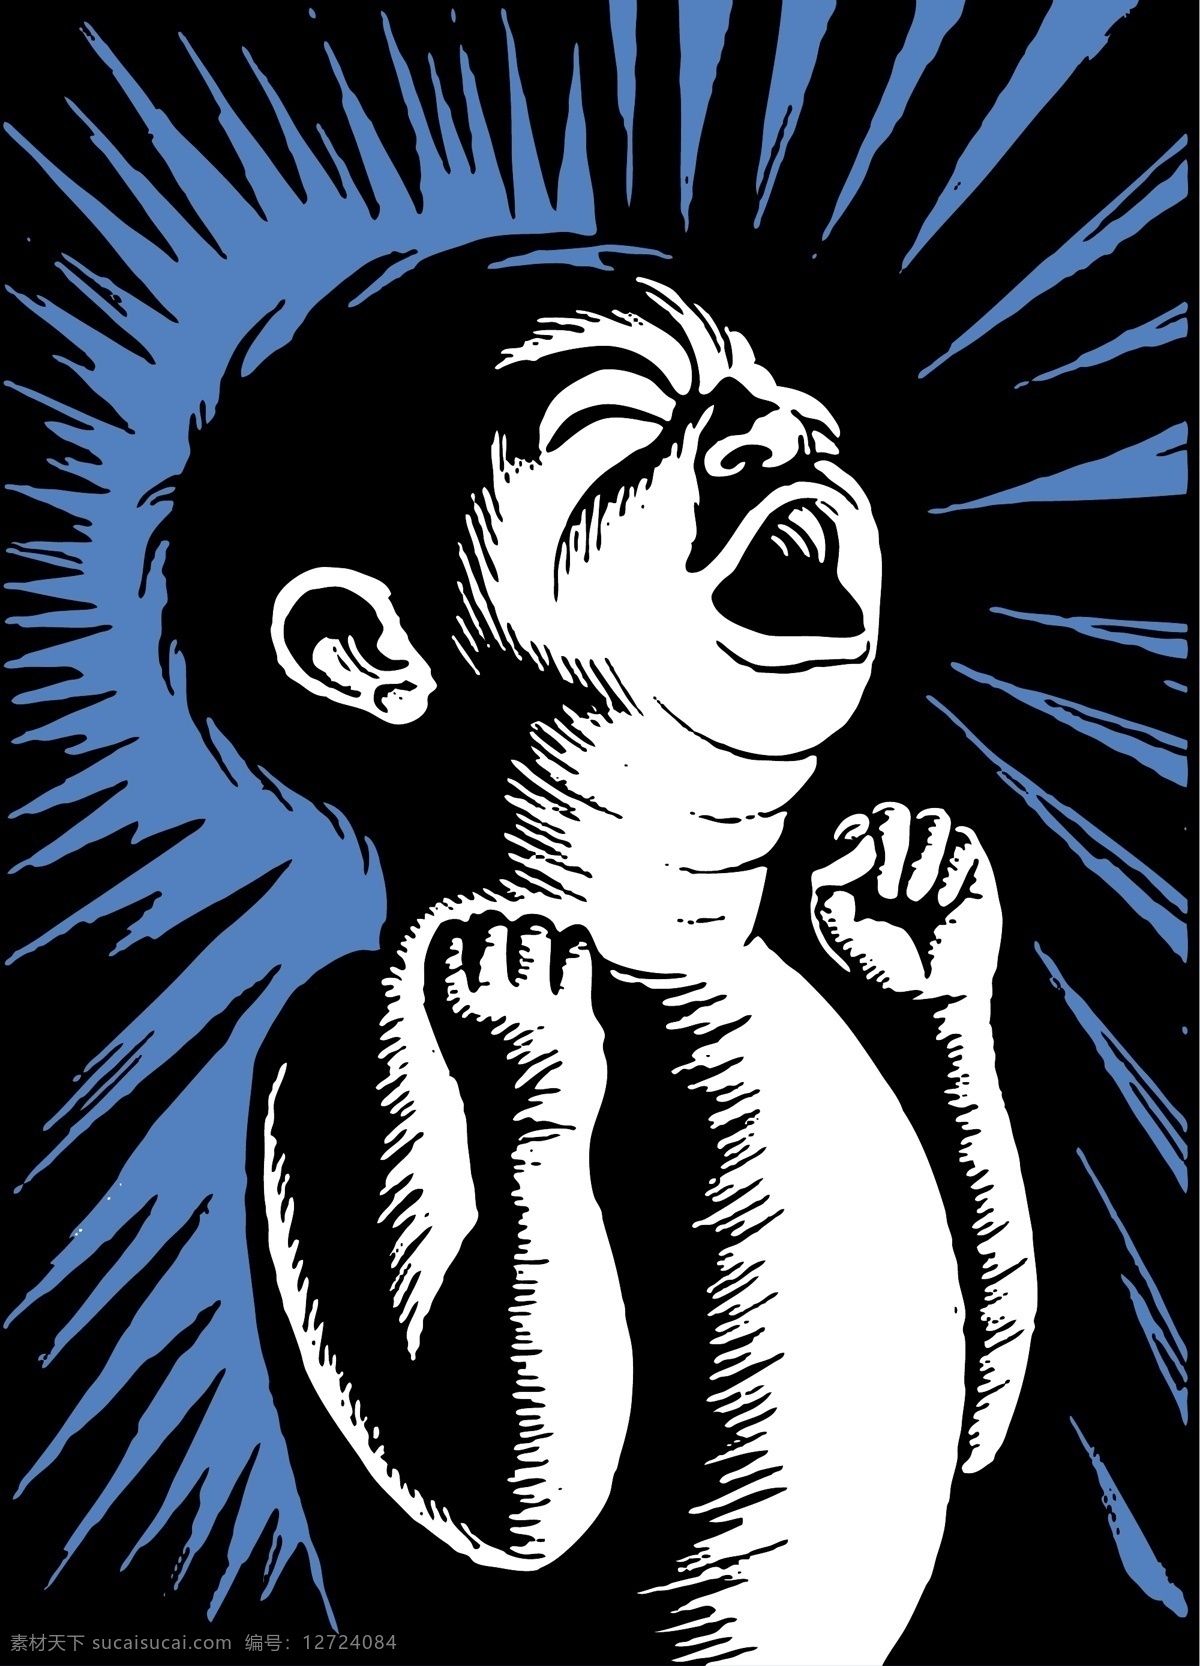 呐喊 baby 婴儿 插画 剪影插画 图案素材